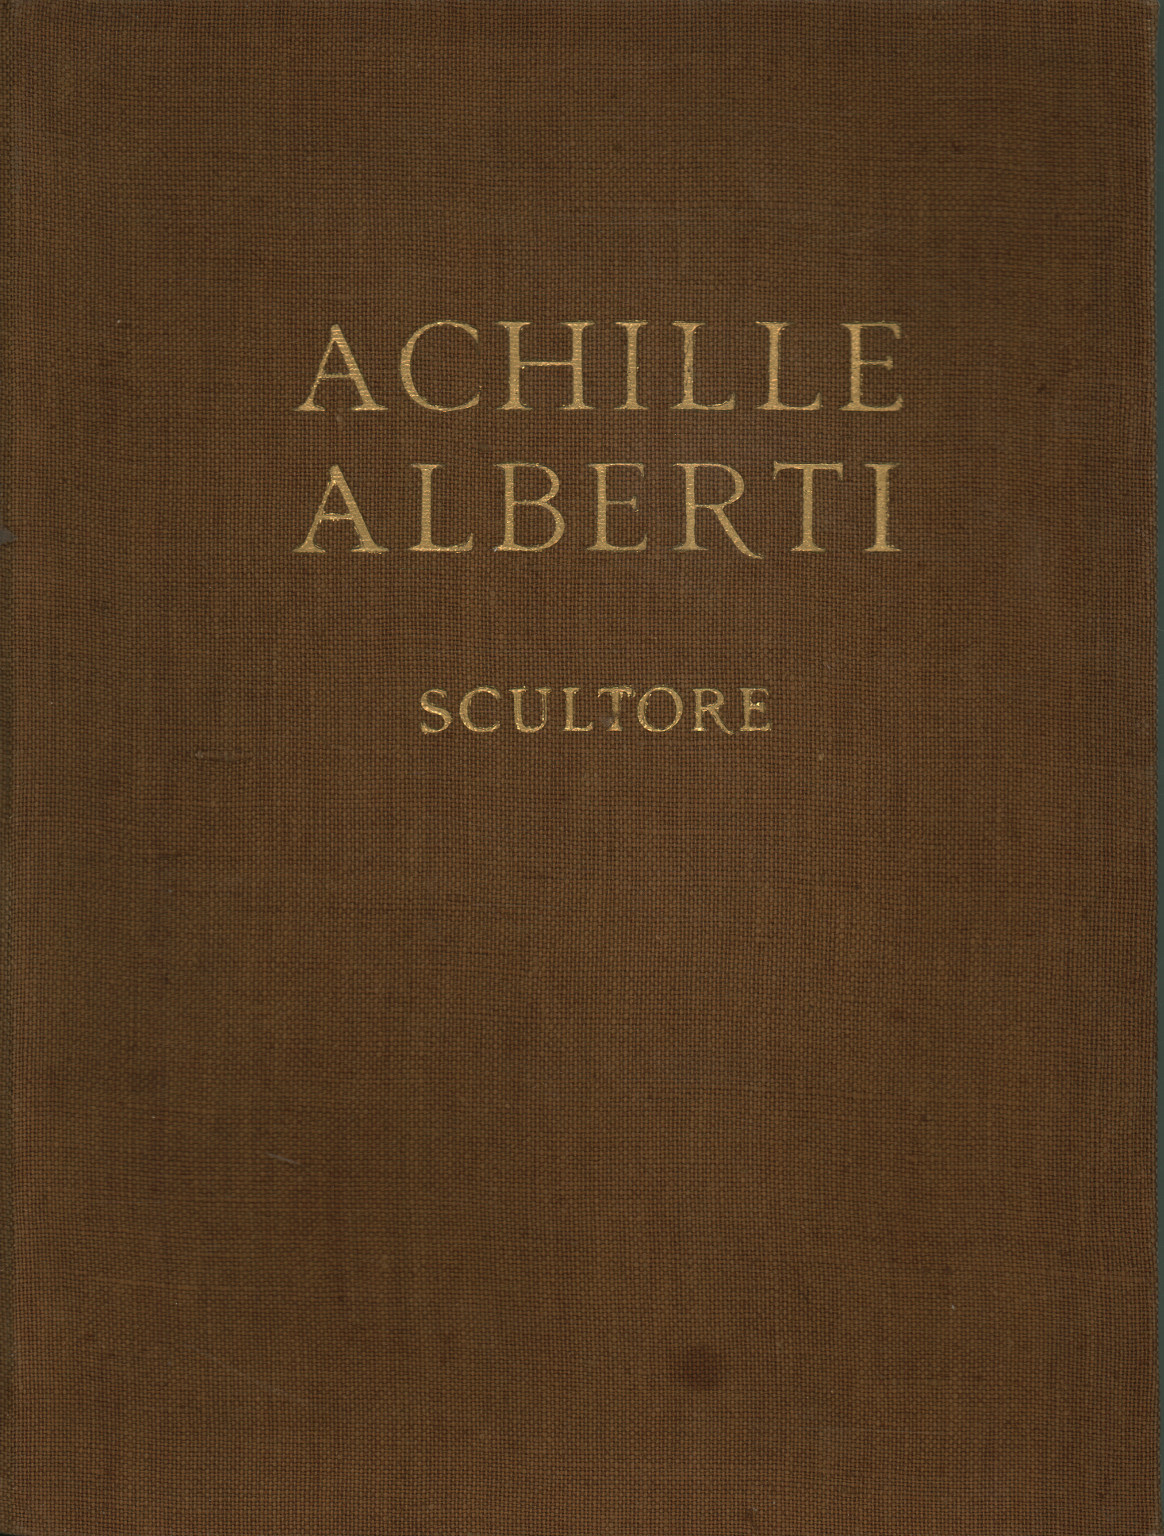 Achille Alberti Bildhauer, s.a.